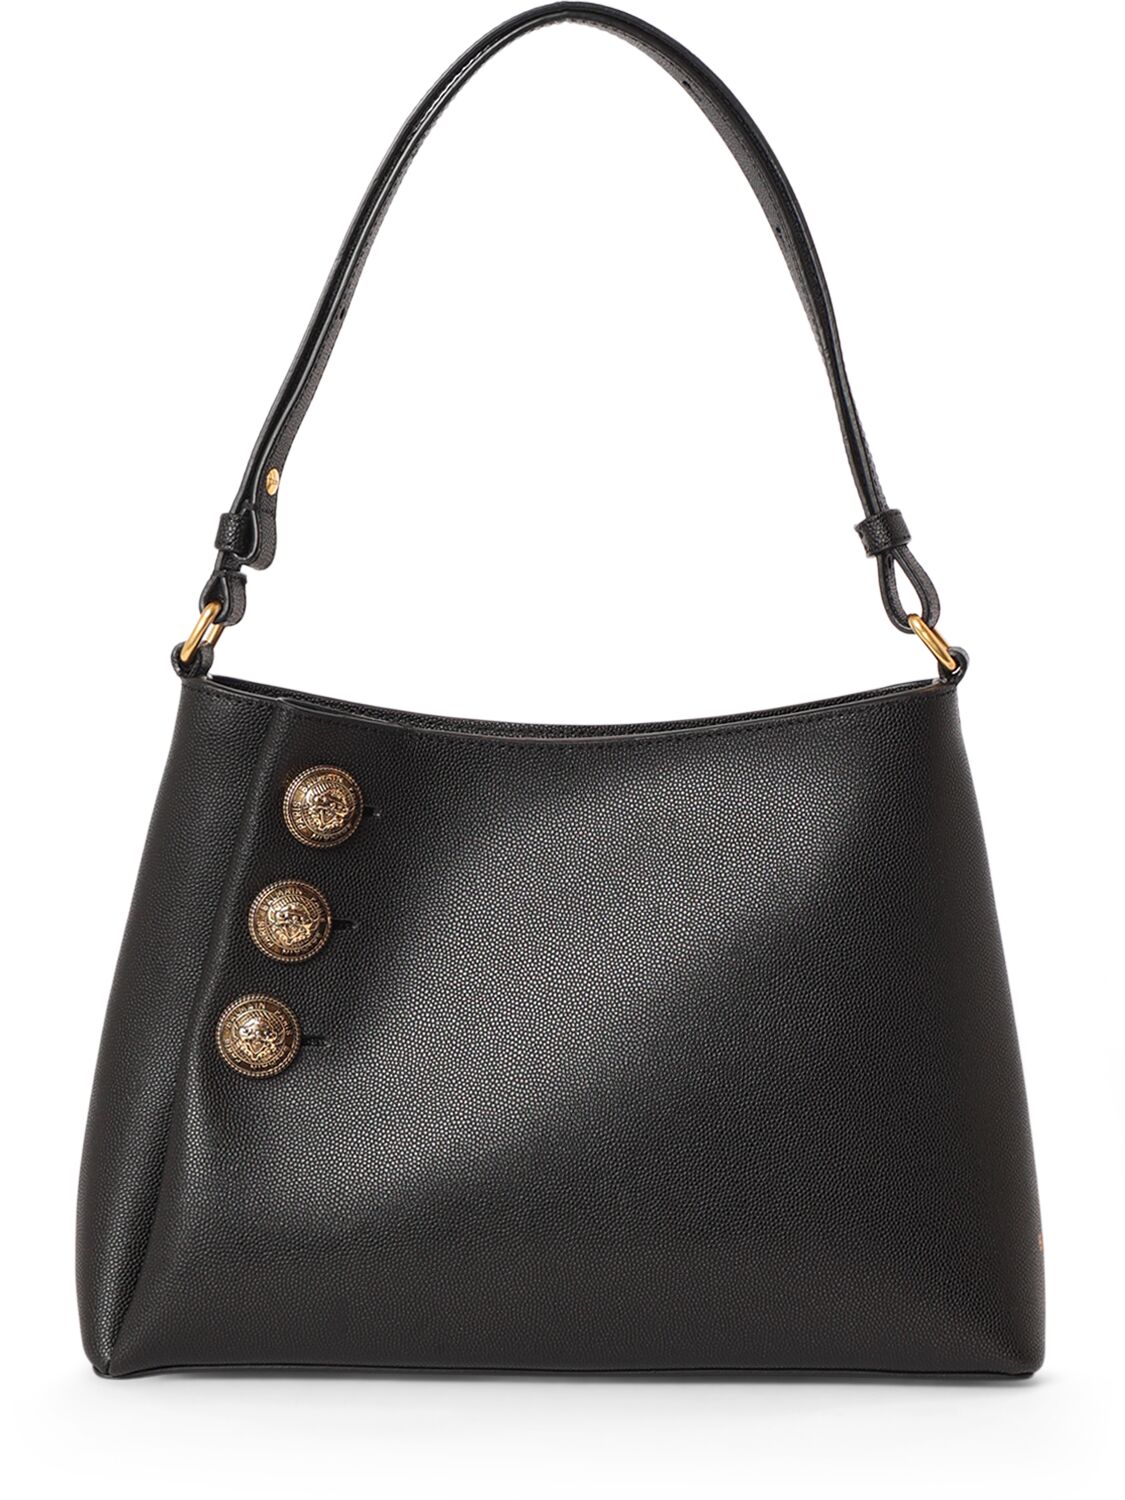 Balmain Embleme Leather Shoulder Bag In Noir